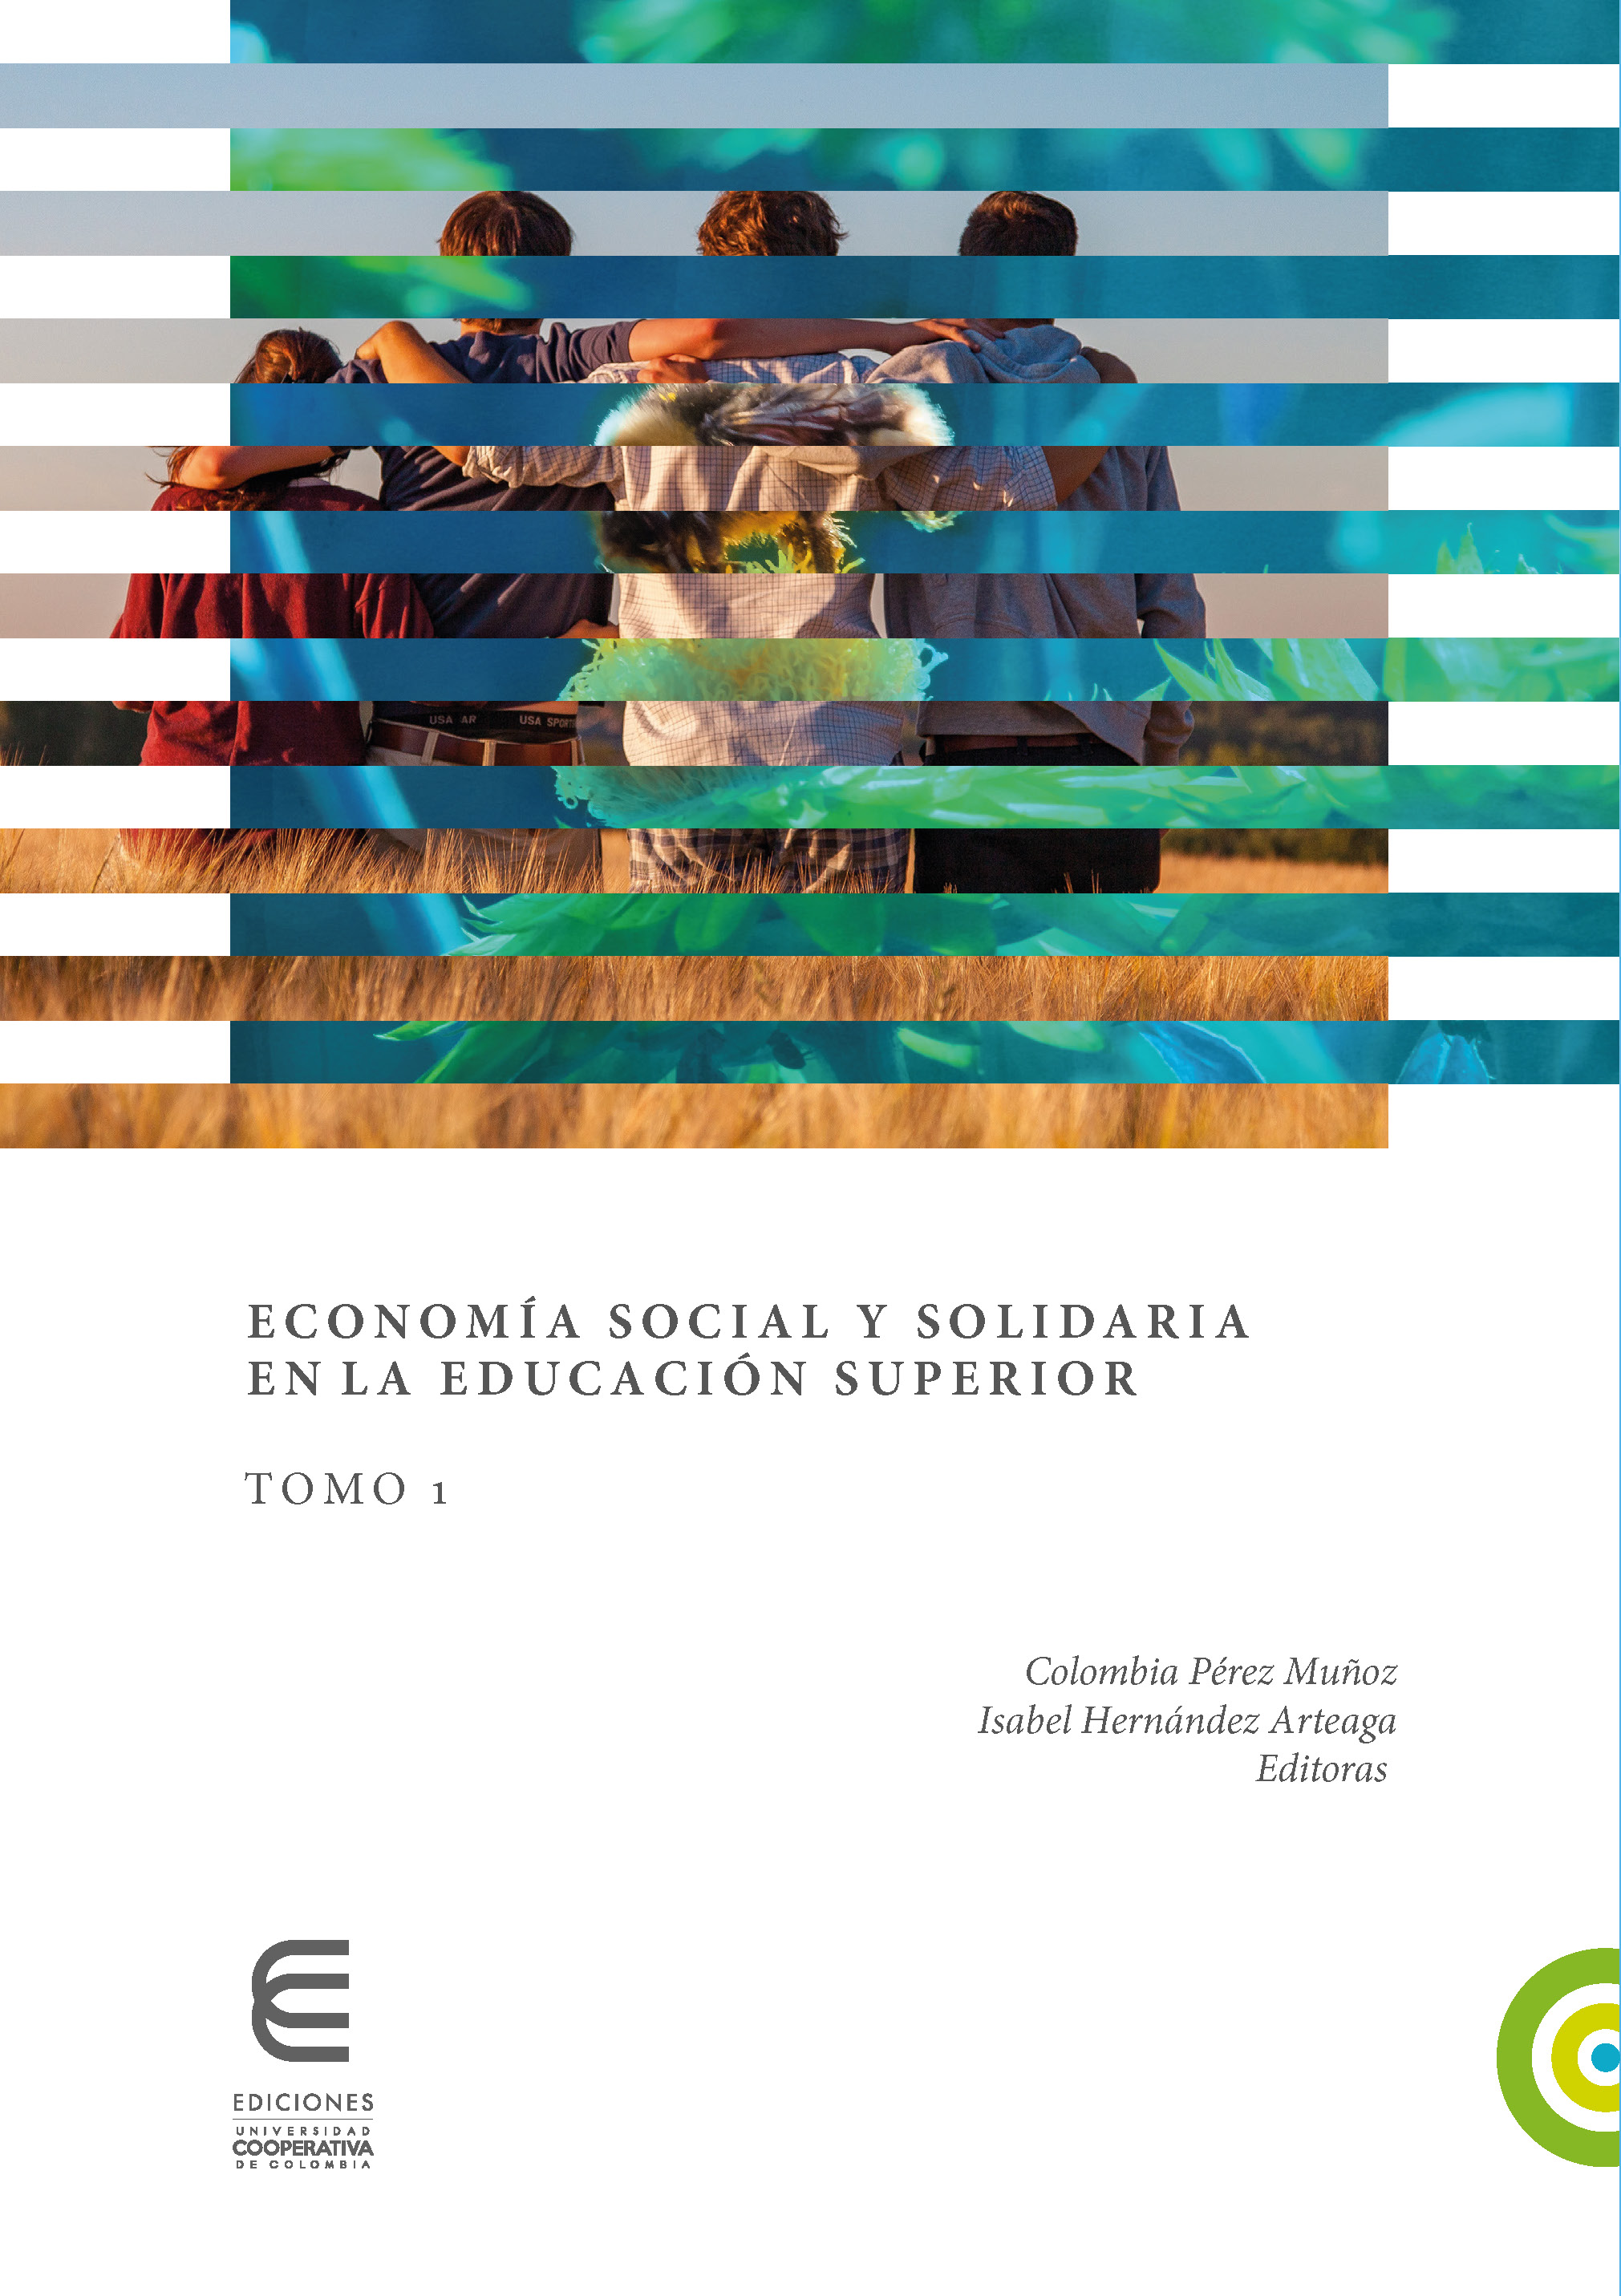 Portada del primer tomo de la colección Economía social y solidaria en la educación superior